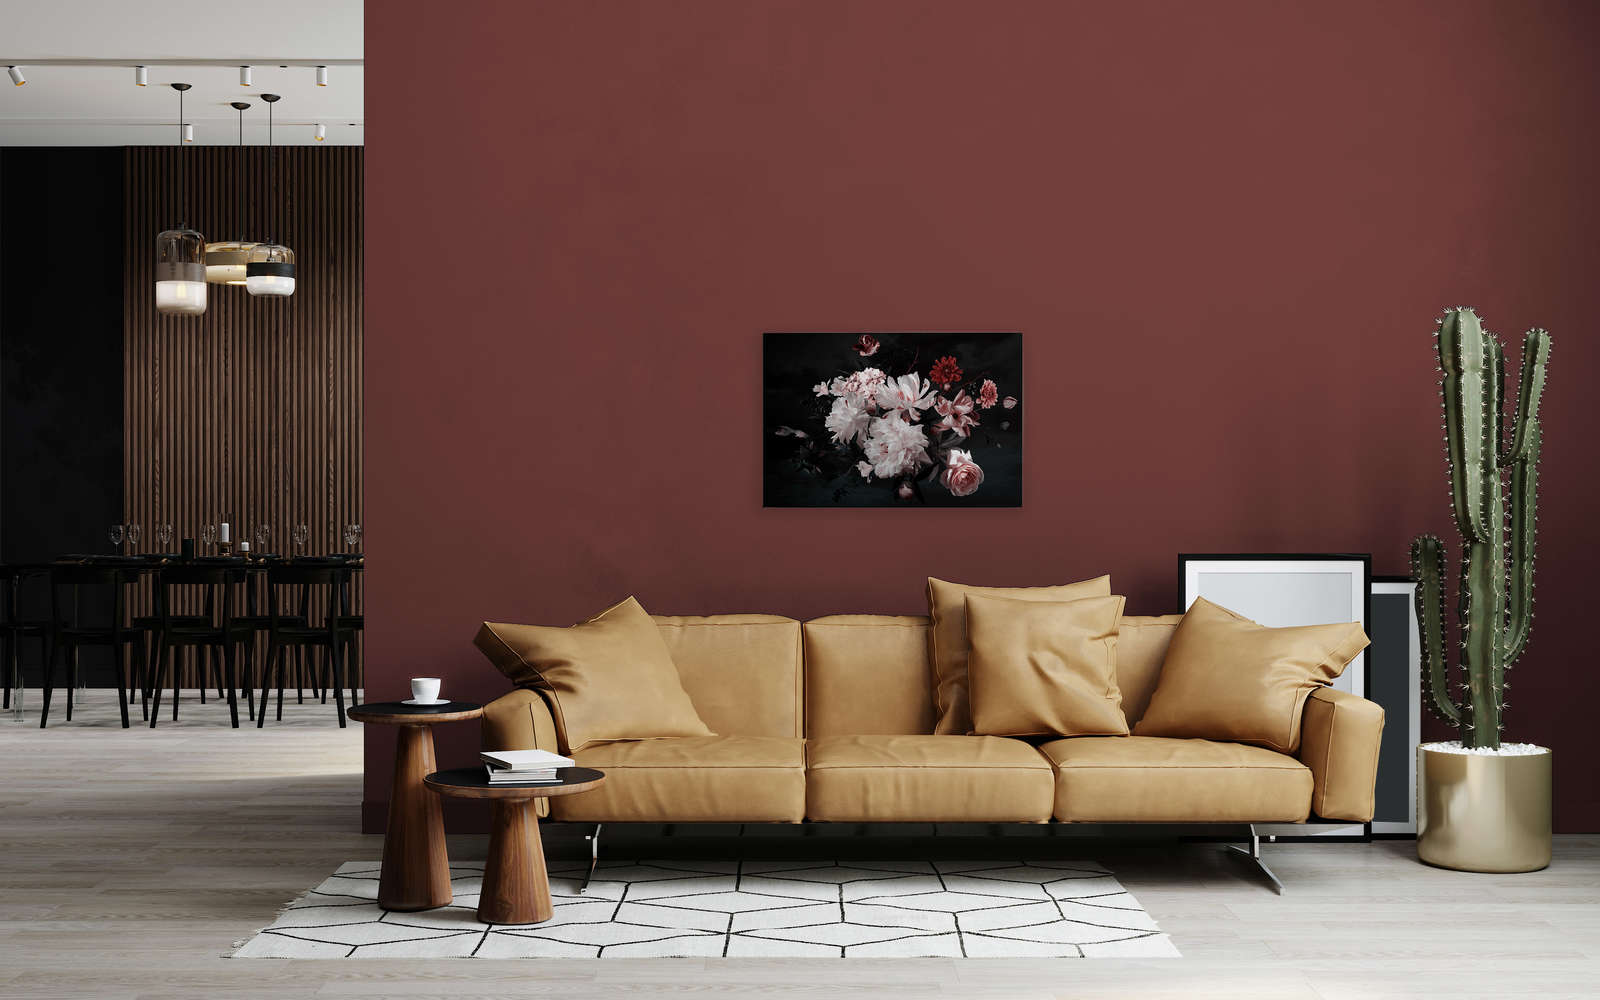             Bouquet Canvas - 0,90 m x 0,60 m
        